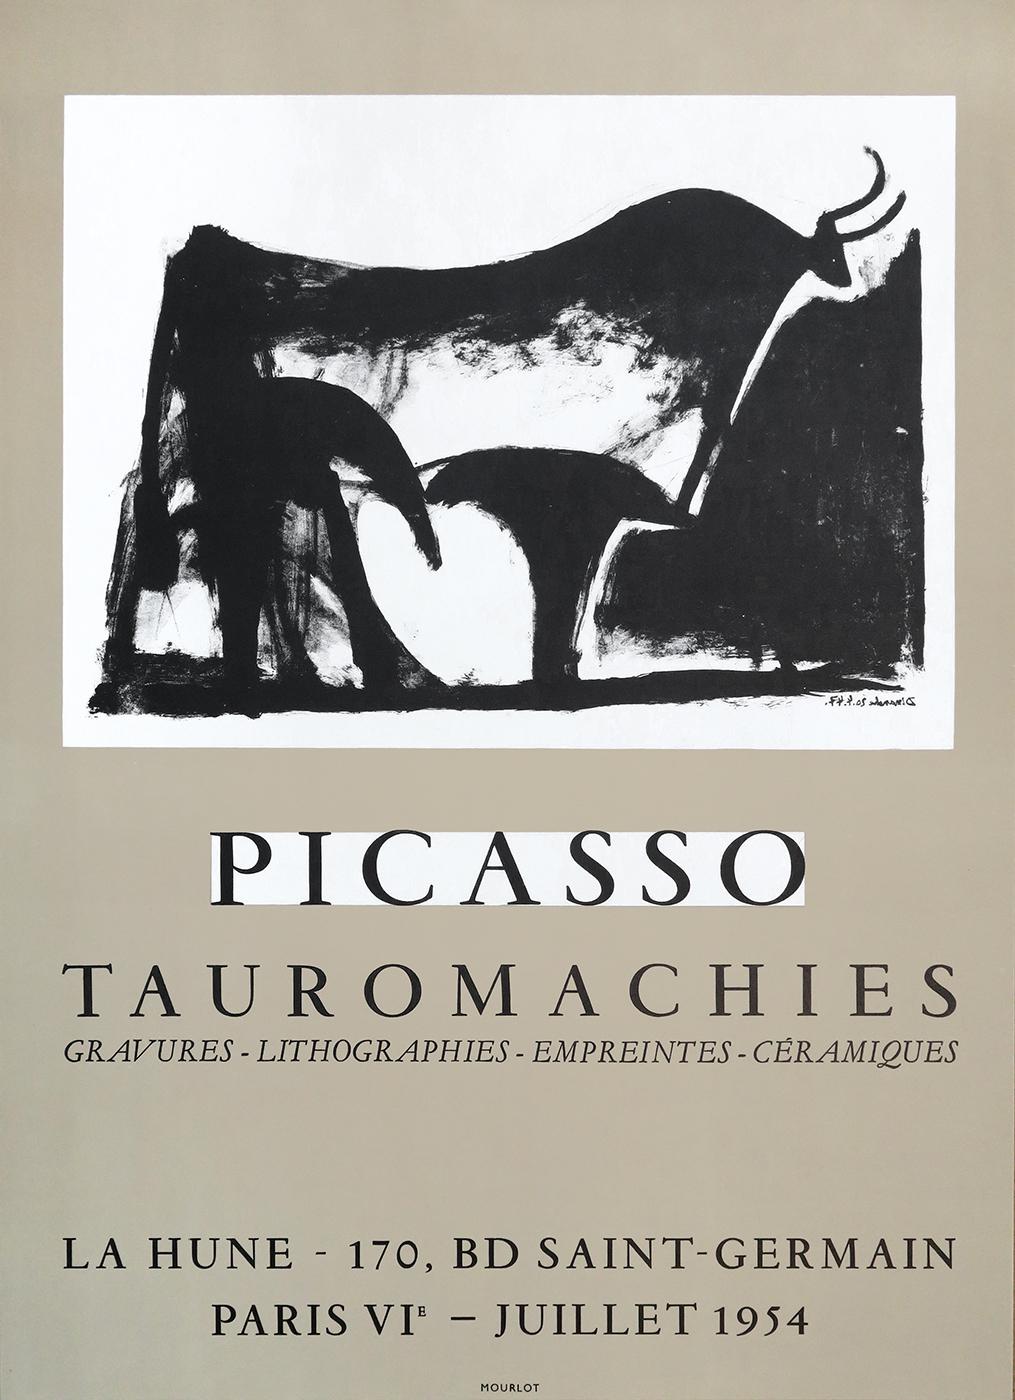 Artist: Pablo Picasso 

Title: Tauromachies

Year: 1954

Edition: 500 

Catalogue Raisonnée: Czwiklitzer n° 99

Size: 41 x 57 cm.